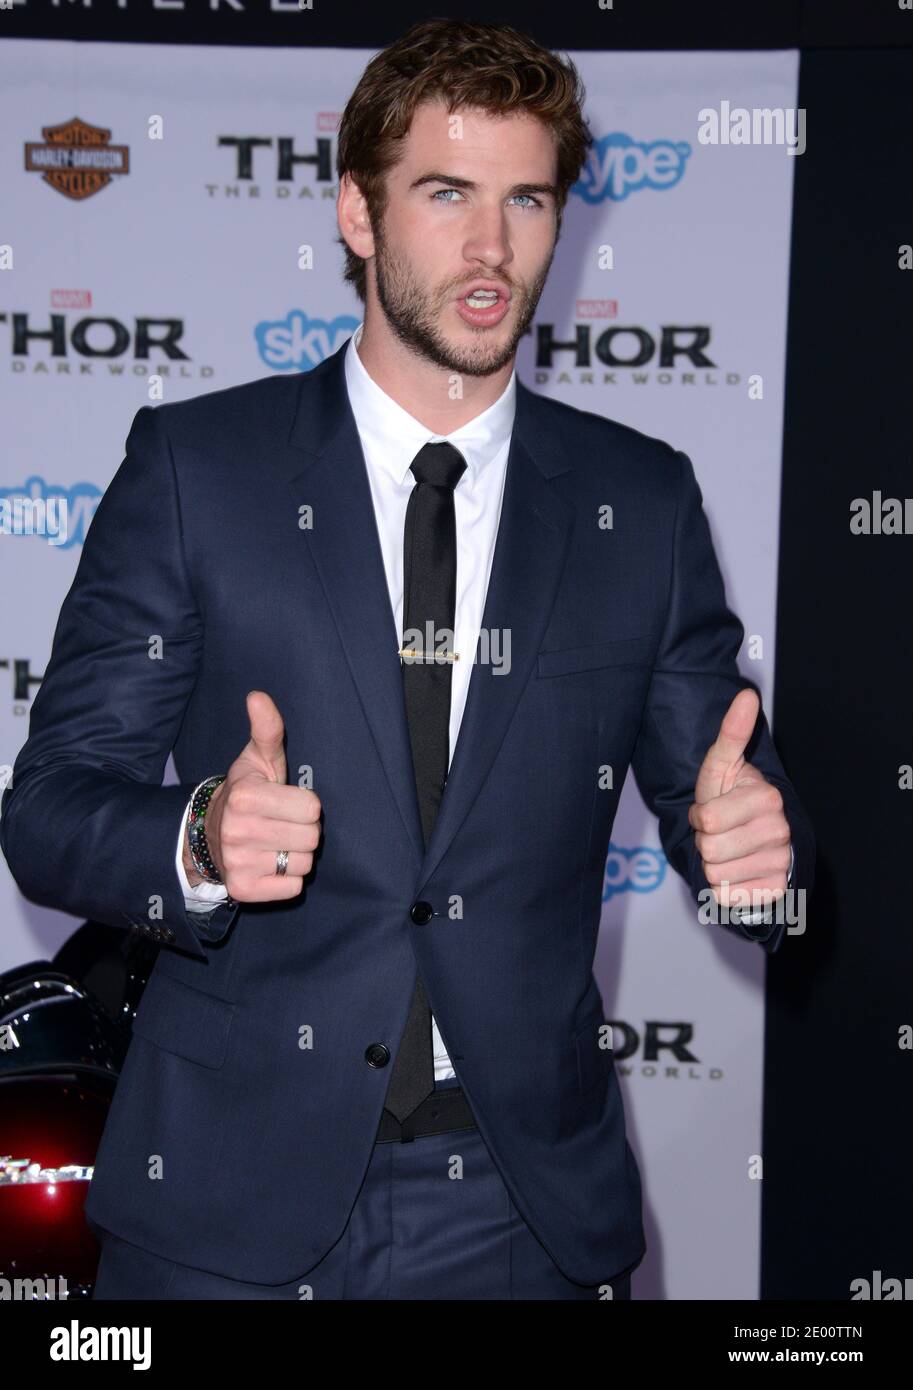 Liam Hemsworth kommt zur Premiere von Marvels 'Thor: The Dark World' am 4. November 2013 im El Capitan Theatre in Los Angeles, CA, USA. Foto von Lionel Hahn/ABACAPRESS.COM Stockfoto